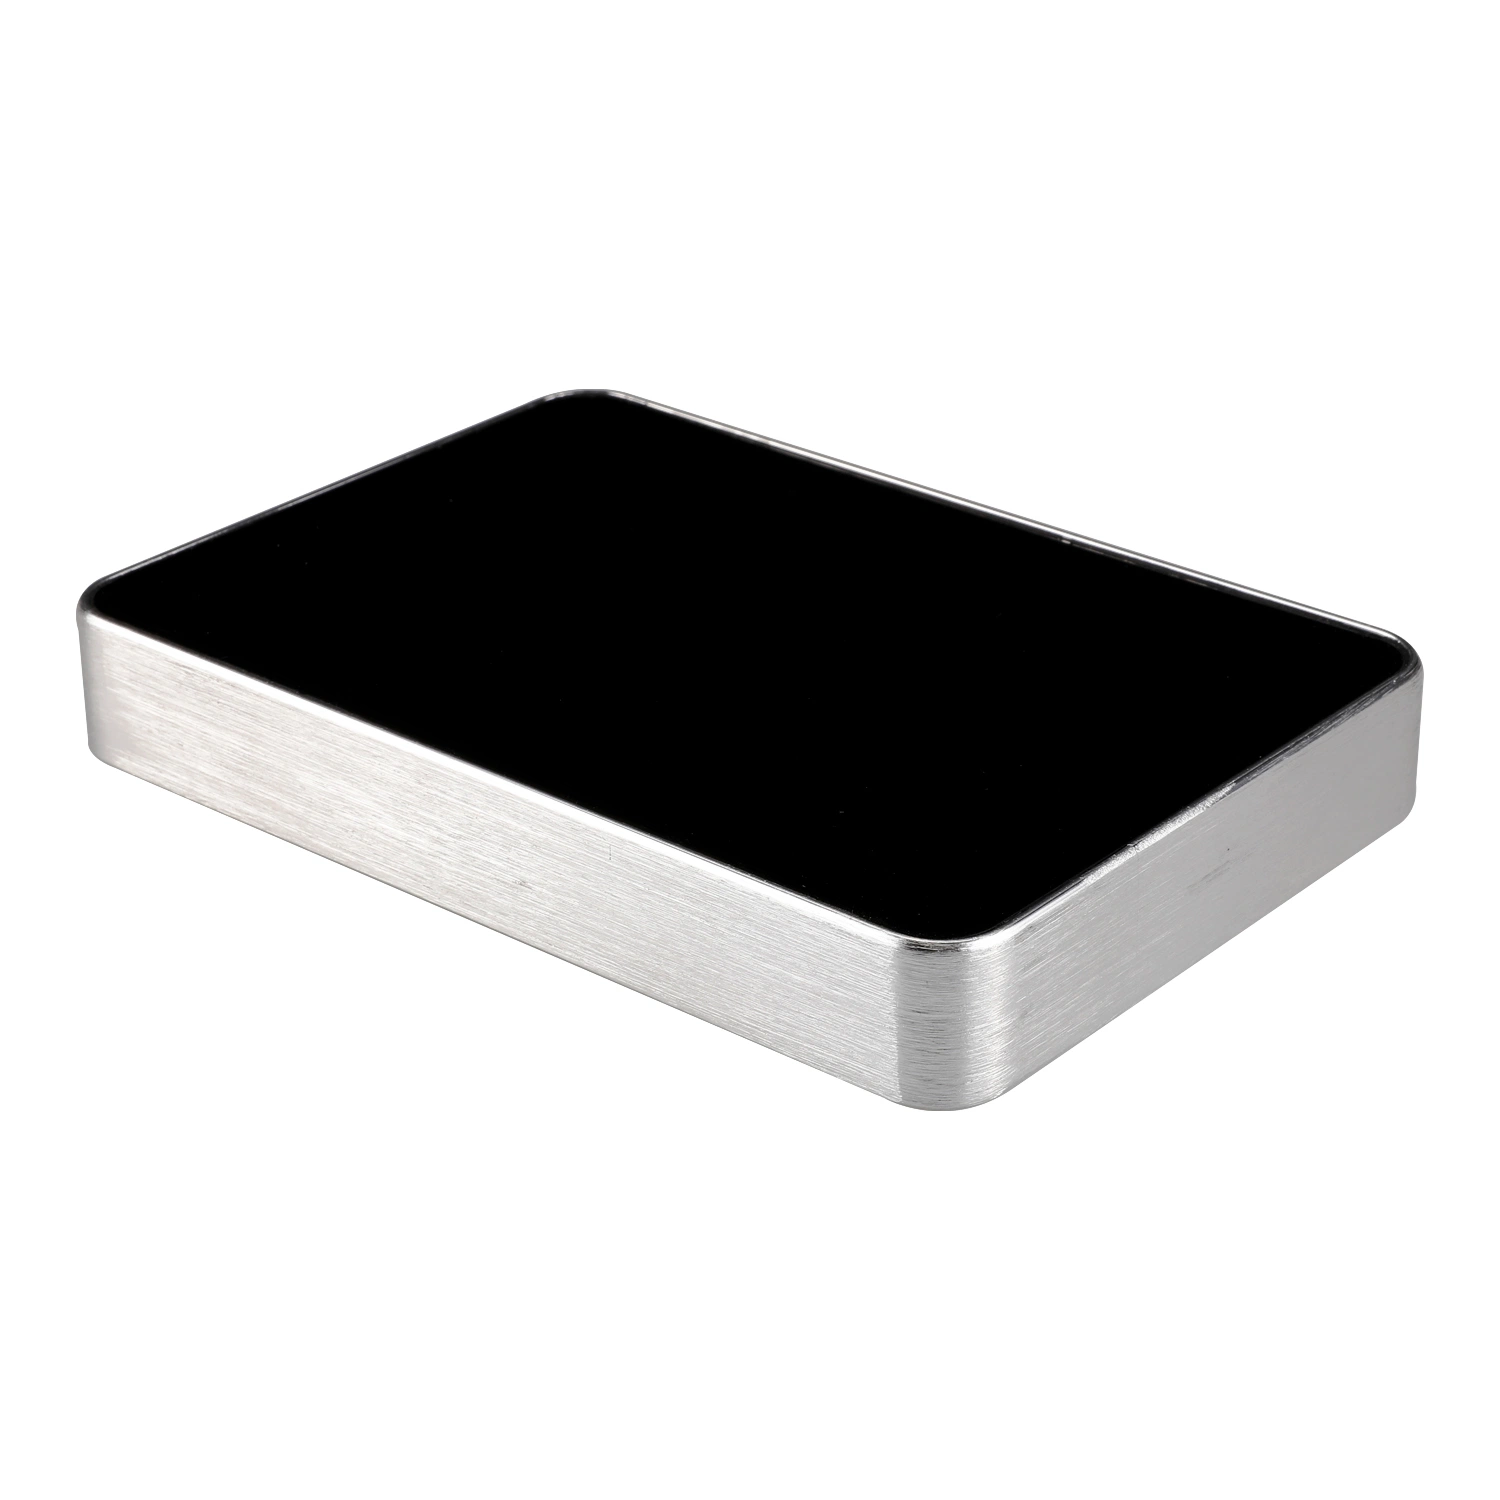 Rockchip 3288 Поддержка 3G Ethernet WiFi Bluetooth УОП мини-ПК для встраиваемых систем .